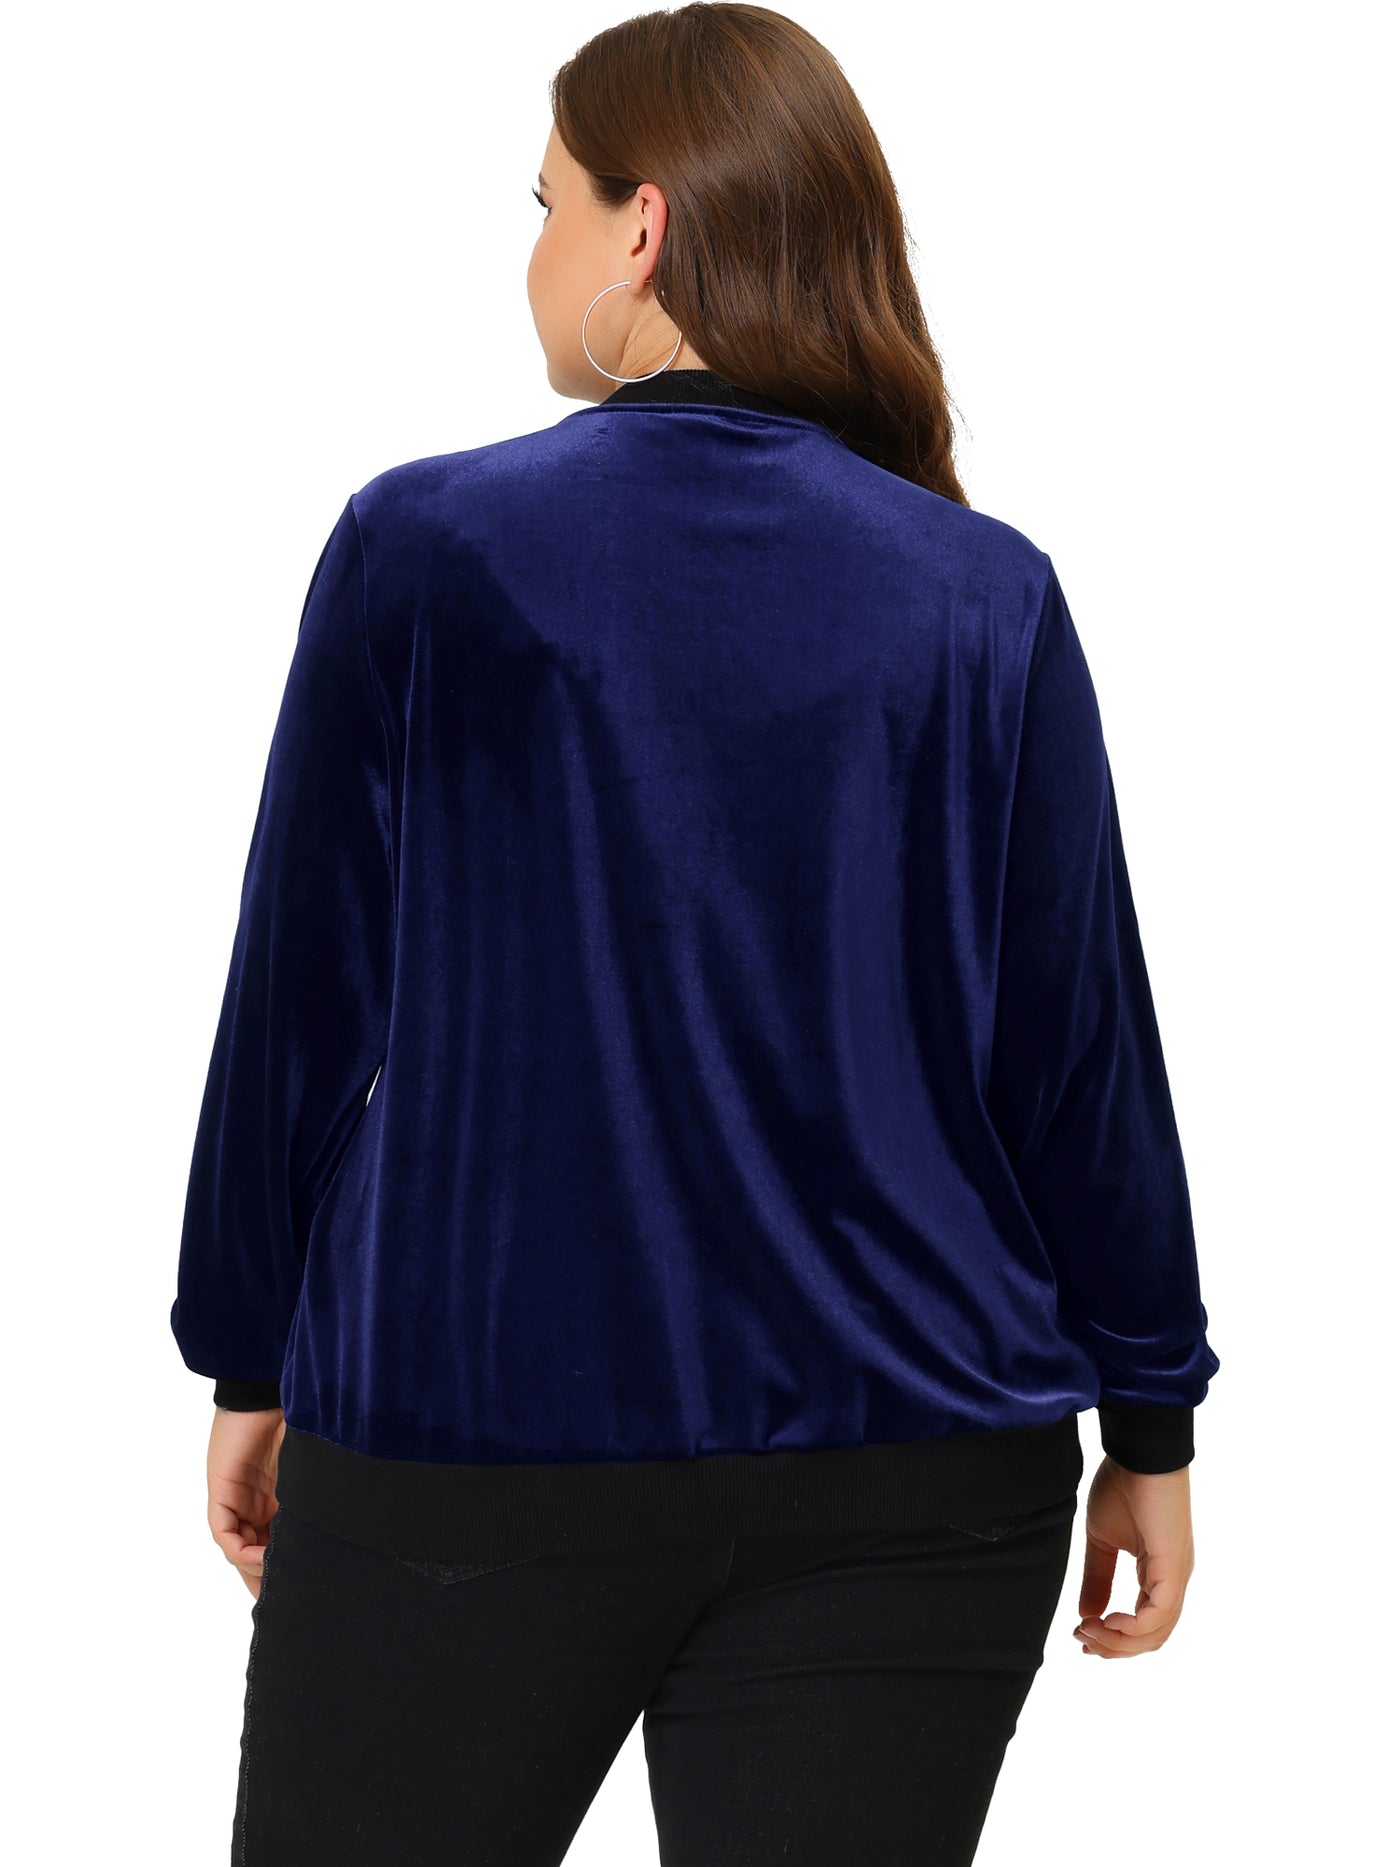 Bublédon Women's Plus Size Velvet Jacket Zipper Slant Pocket Long Sleeve Casual Jackets